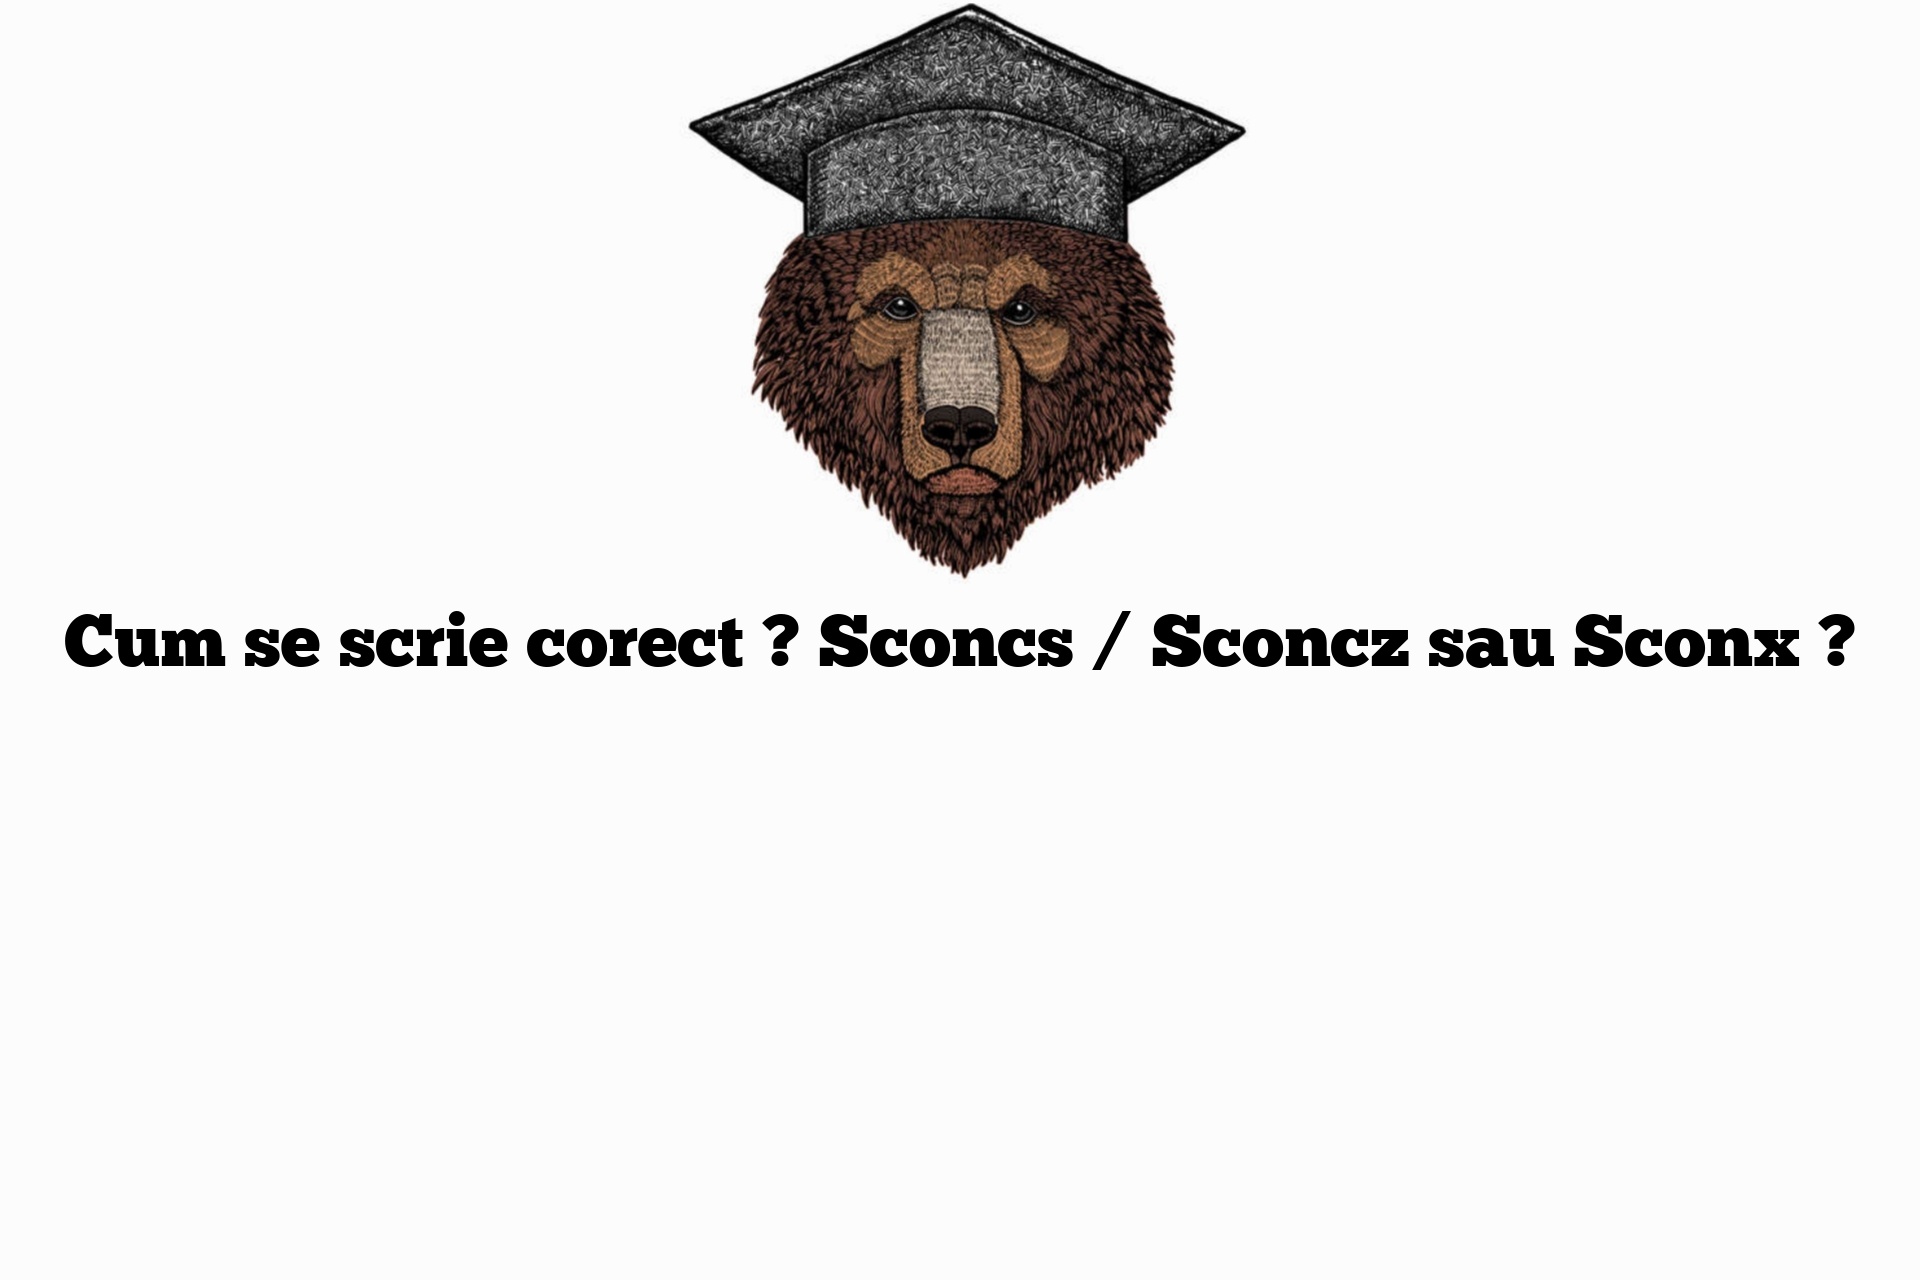 Cum se scrie corect ? Sconcs / Sconcz sau Sconx ?